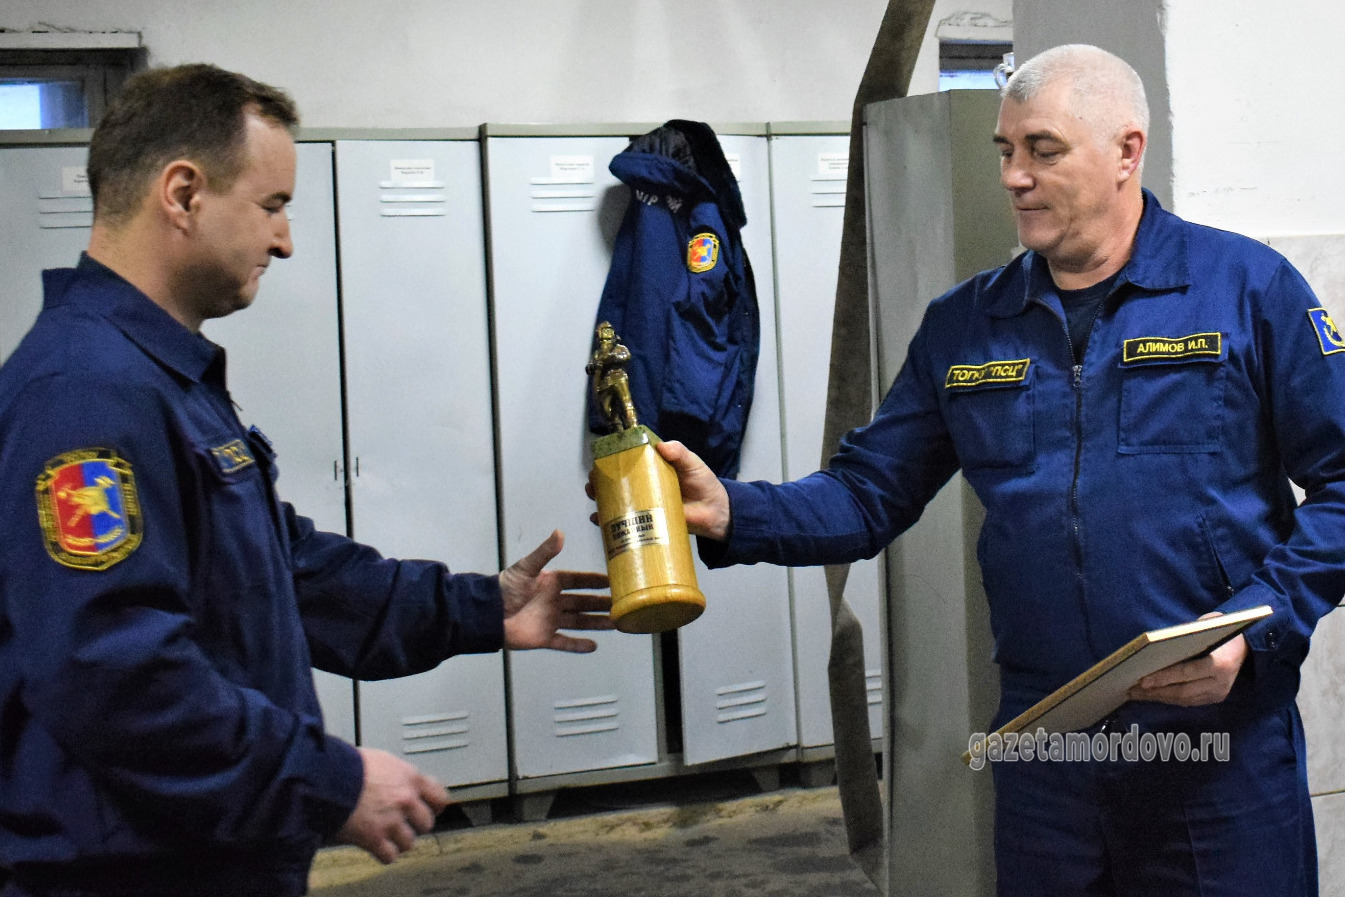 Переходящий кубок «Лучший пожарный» получил Андрей Катков (слева)